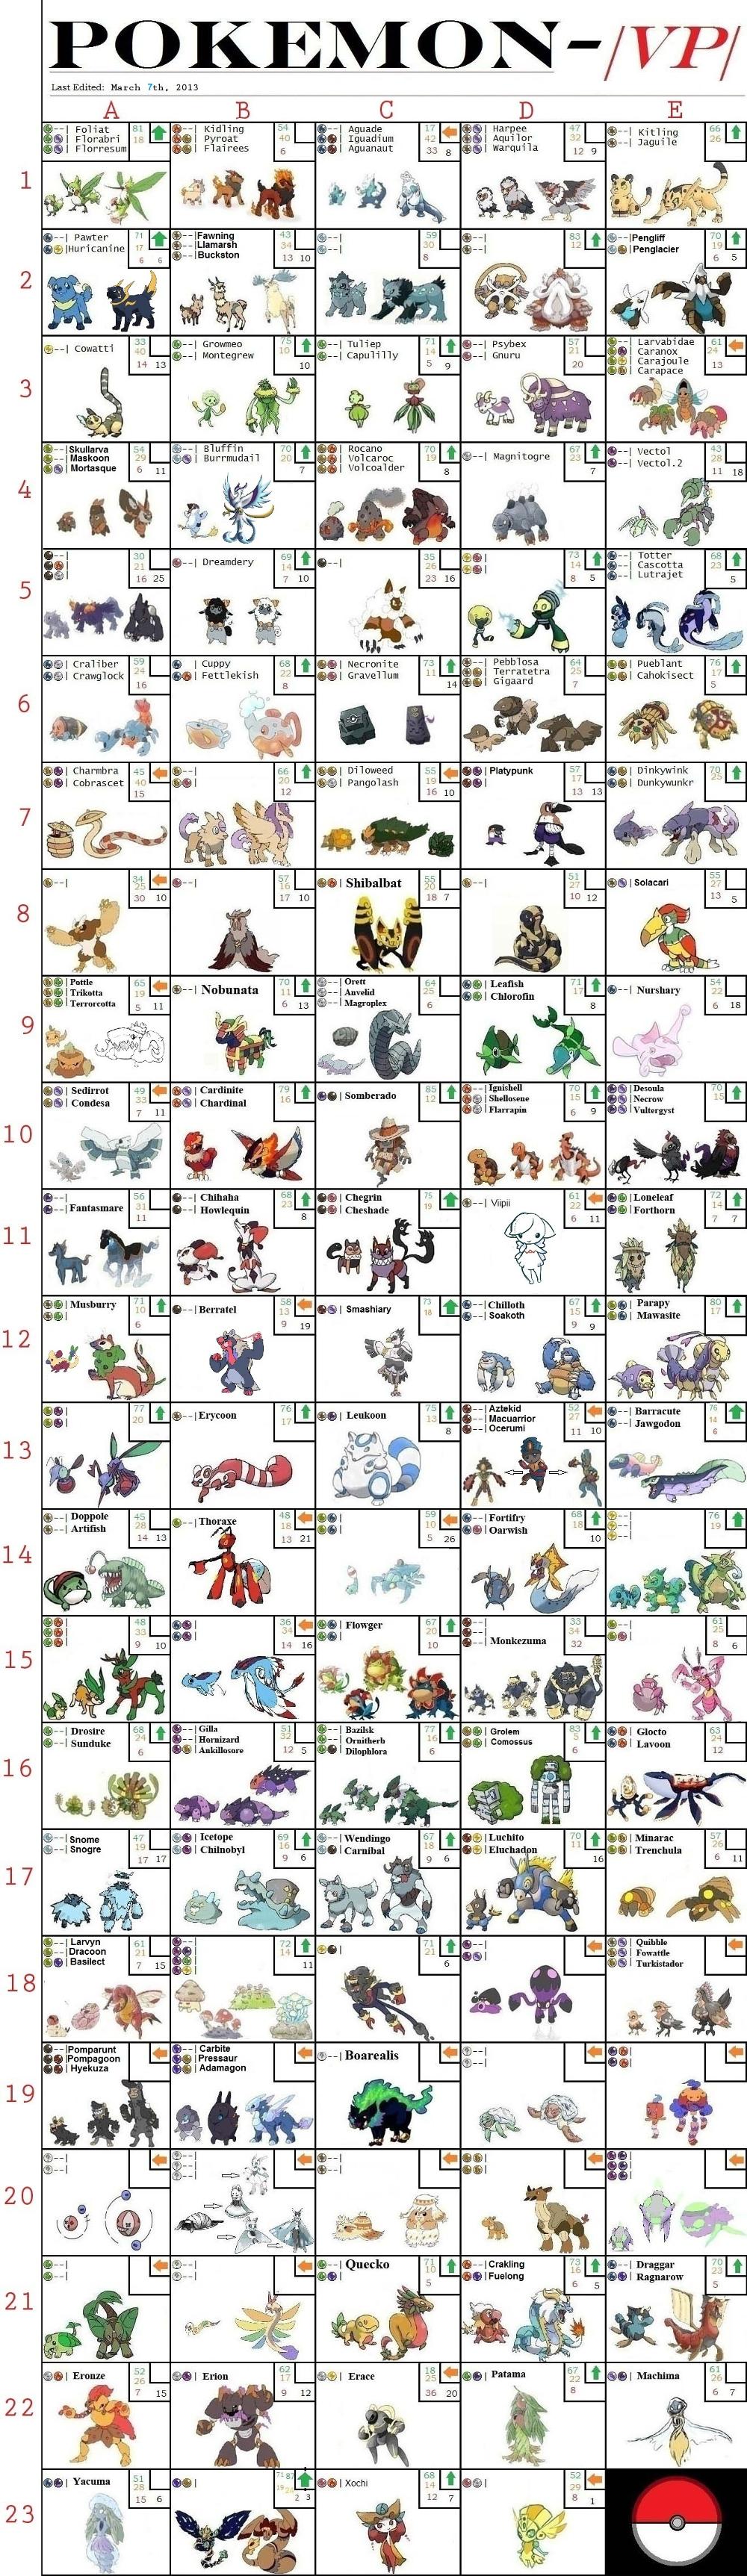 4chan pokemon list